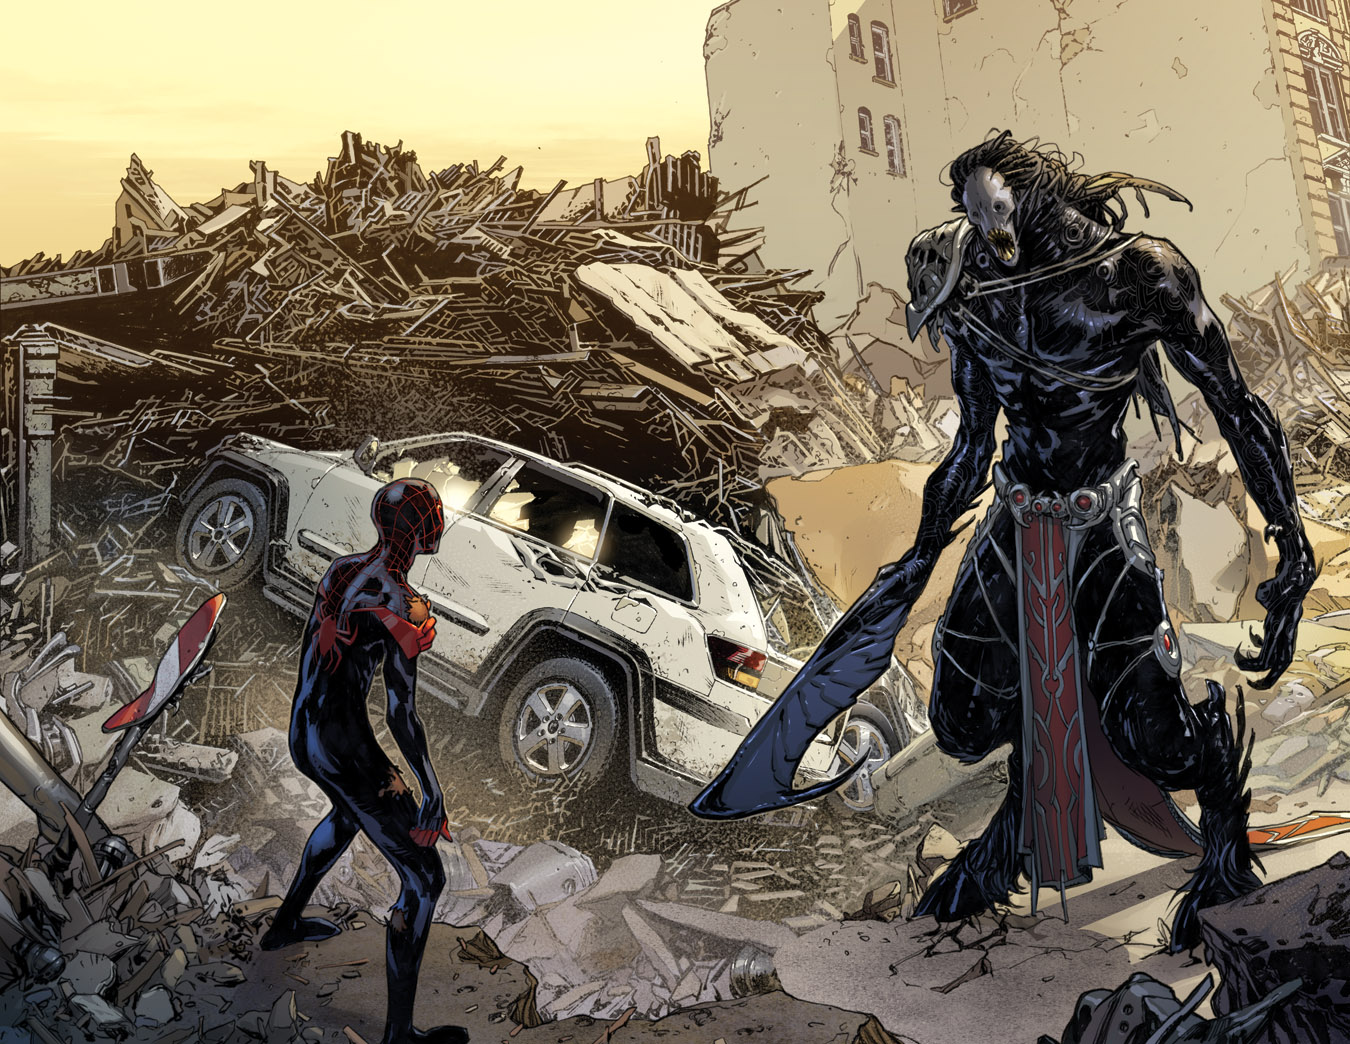 'Spider-Man' #1 Brings Miles Morales To Marvel 616